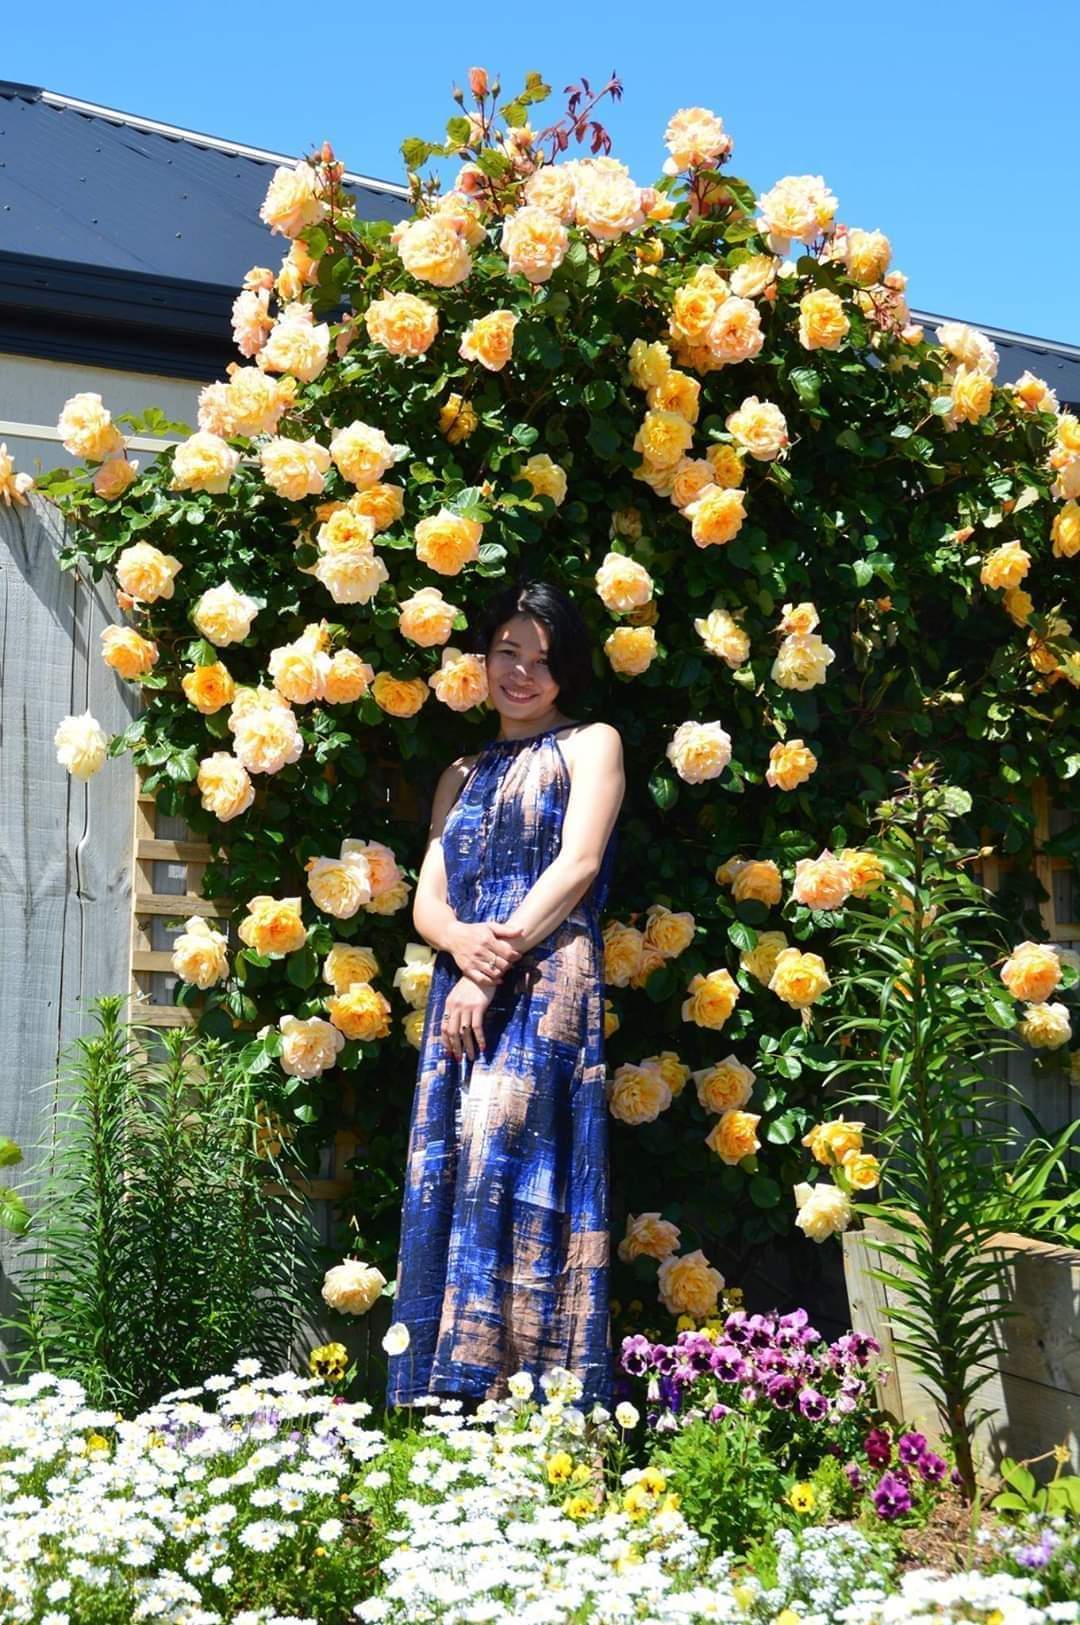 Nhà đẹp: Choáng ngợp với khu vườn hoa nở quanh năm đẹp tựa cổ tích của mẹ Việt tại Úc - Ảnh 6.